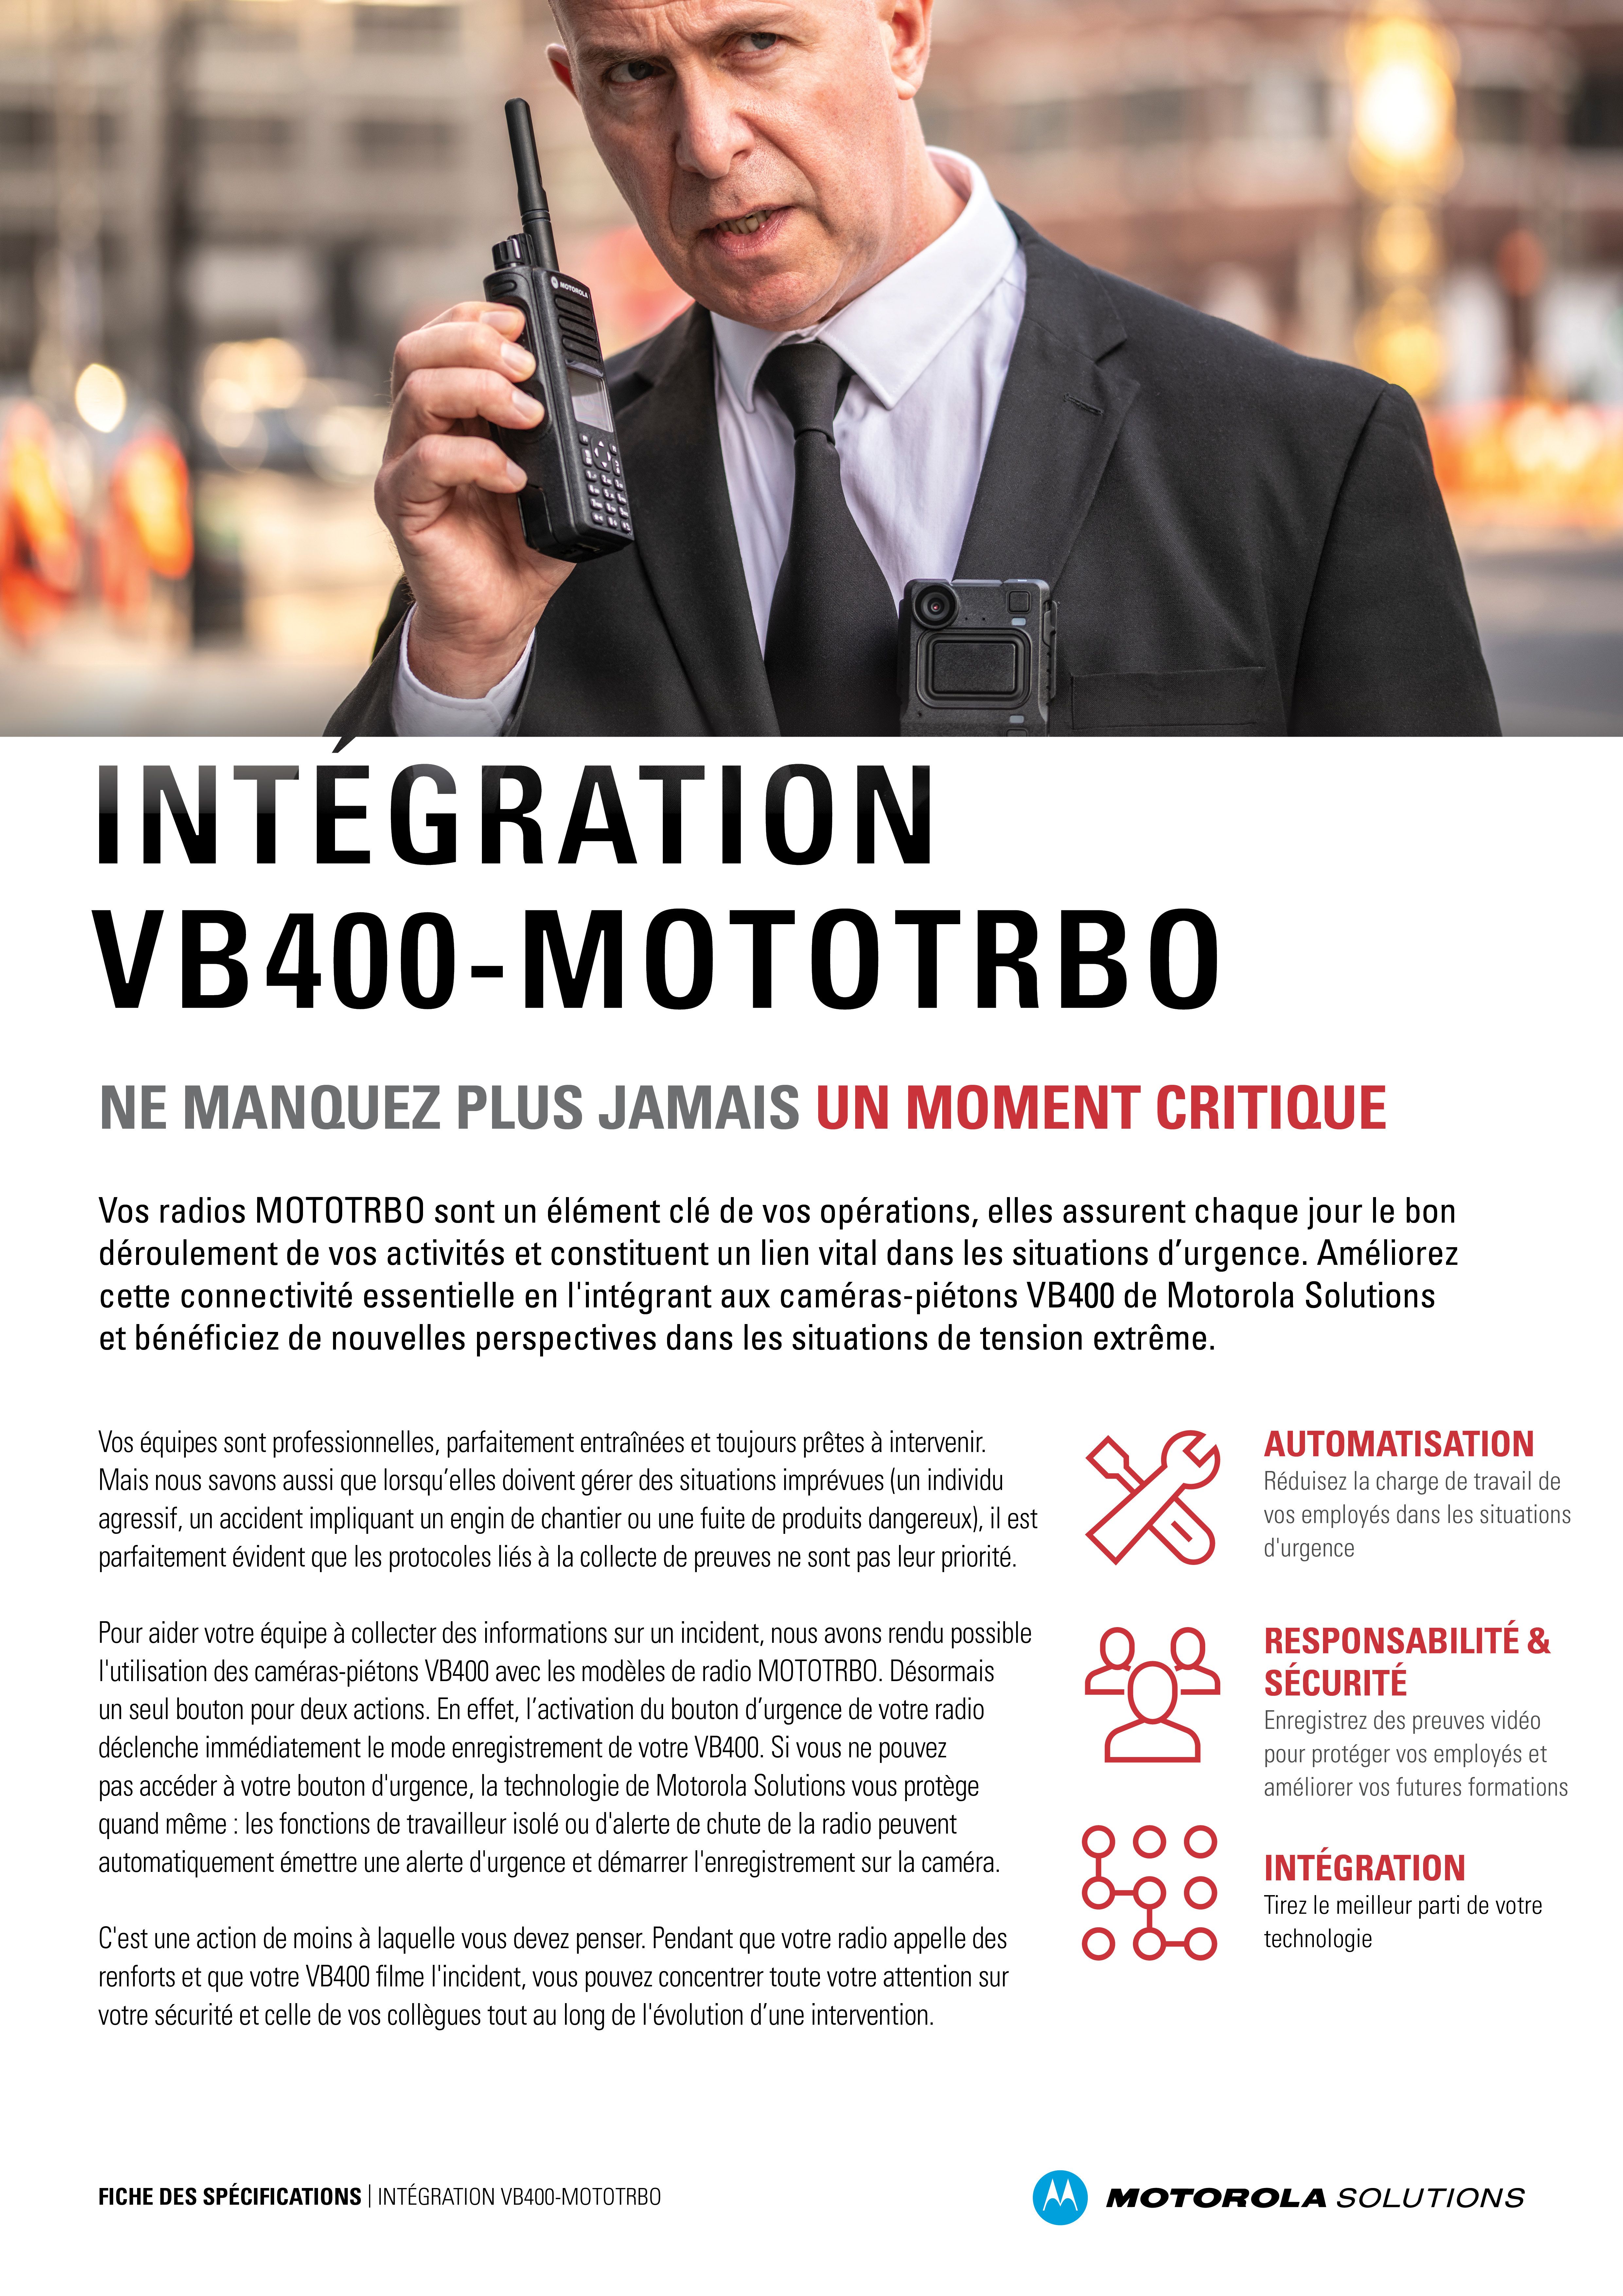 VB400-MOTOTRBO Integration Fact Sheet